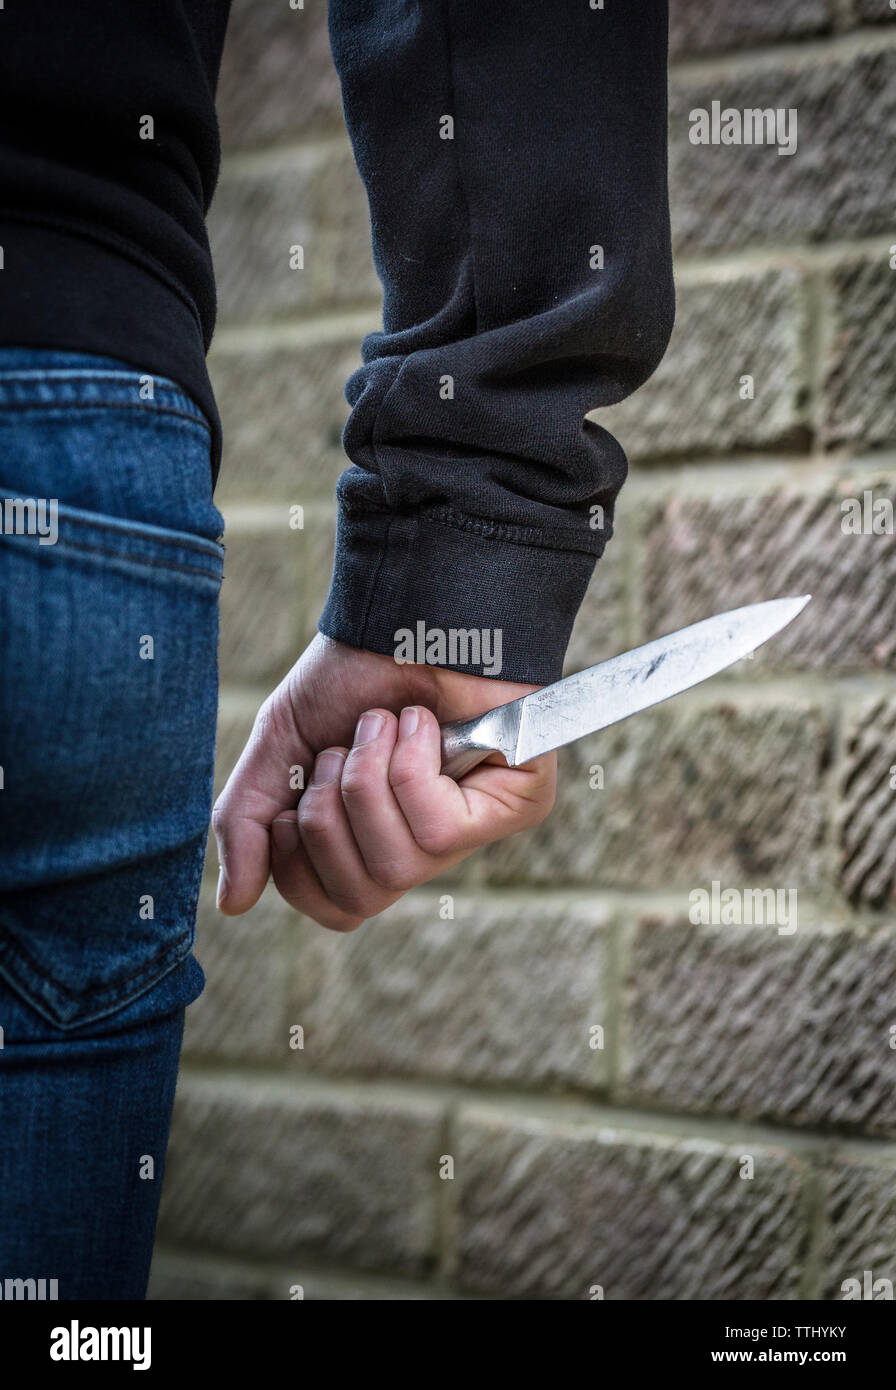 La criminalité couteau, adolescent dans une culotte, transportant un couteau dans la rue au Royaume-Uni Banque D'Images